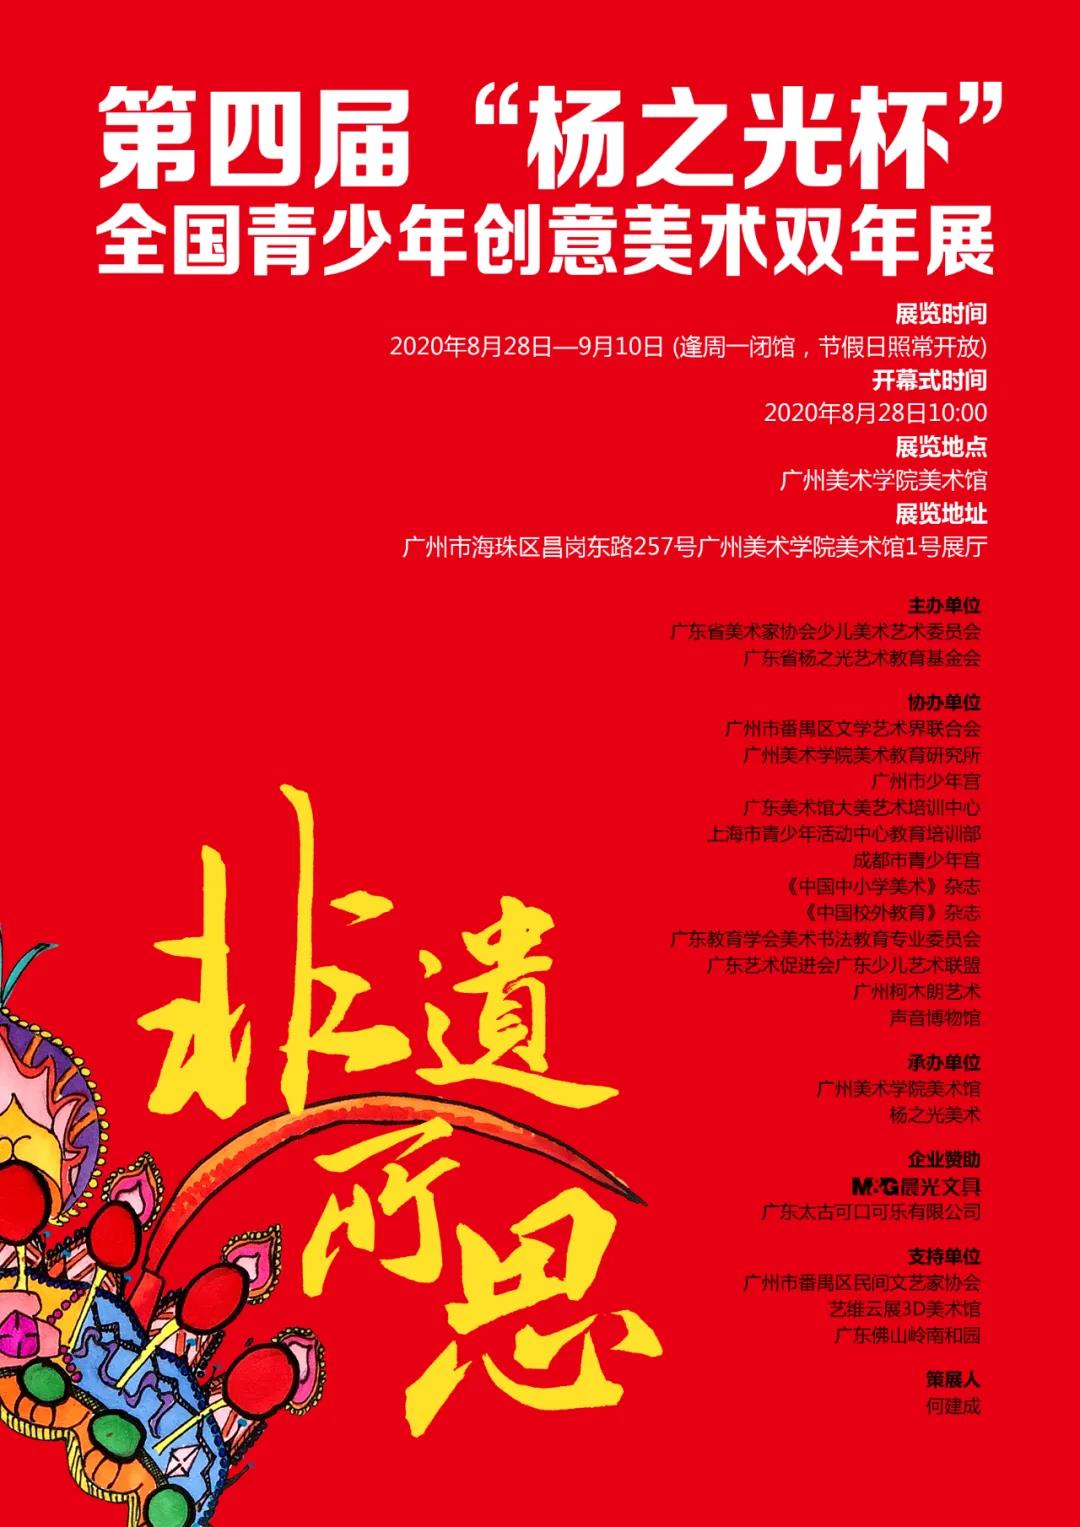 第四届'杨之光杯'全国青少年创意美术双年展在广州美术学院美术馆开幕